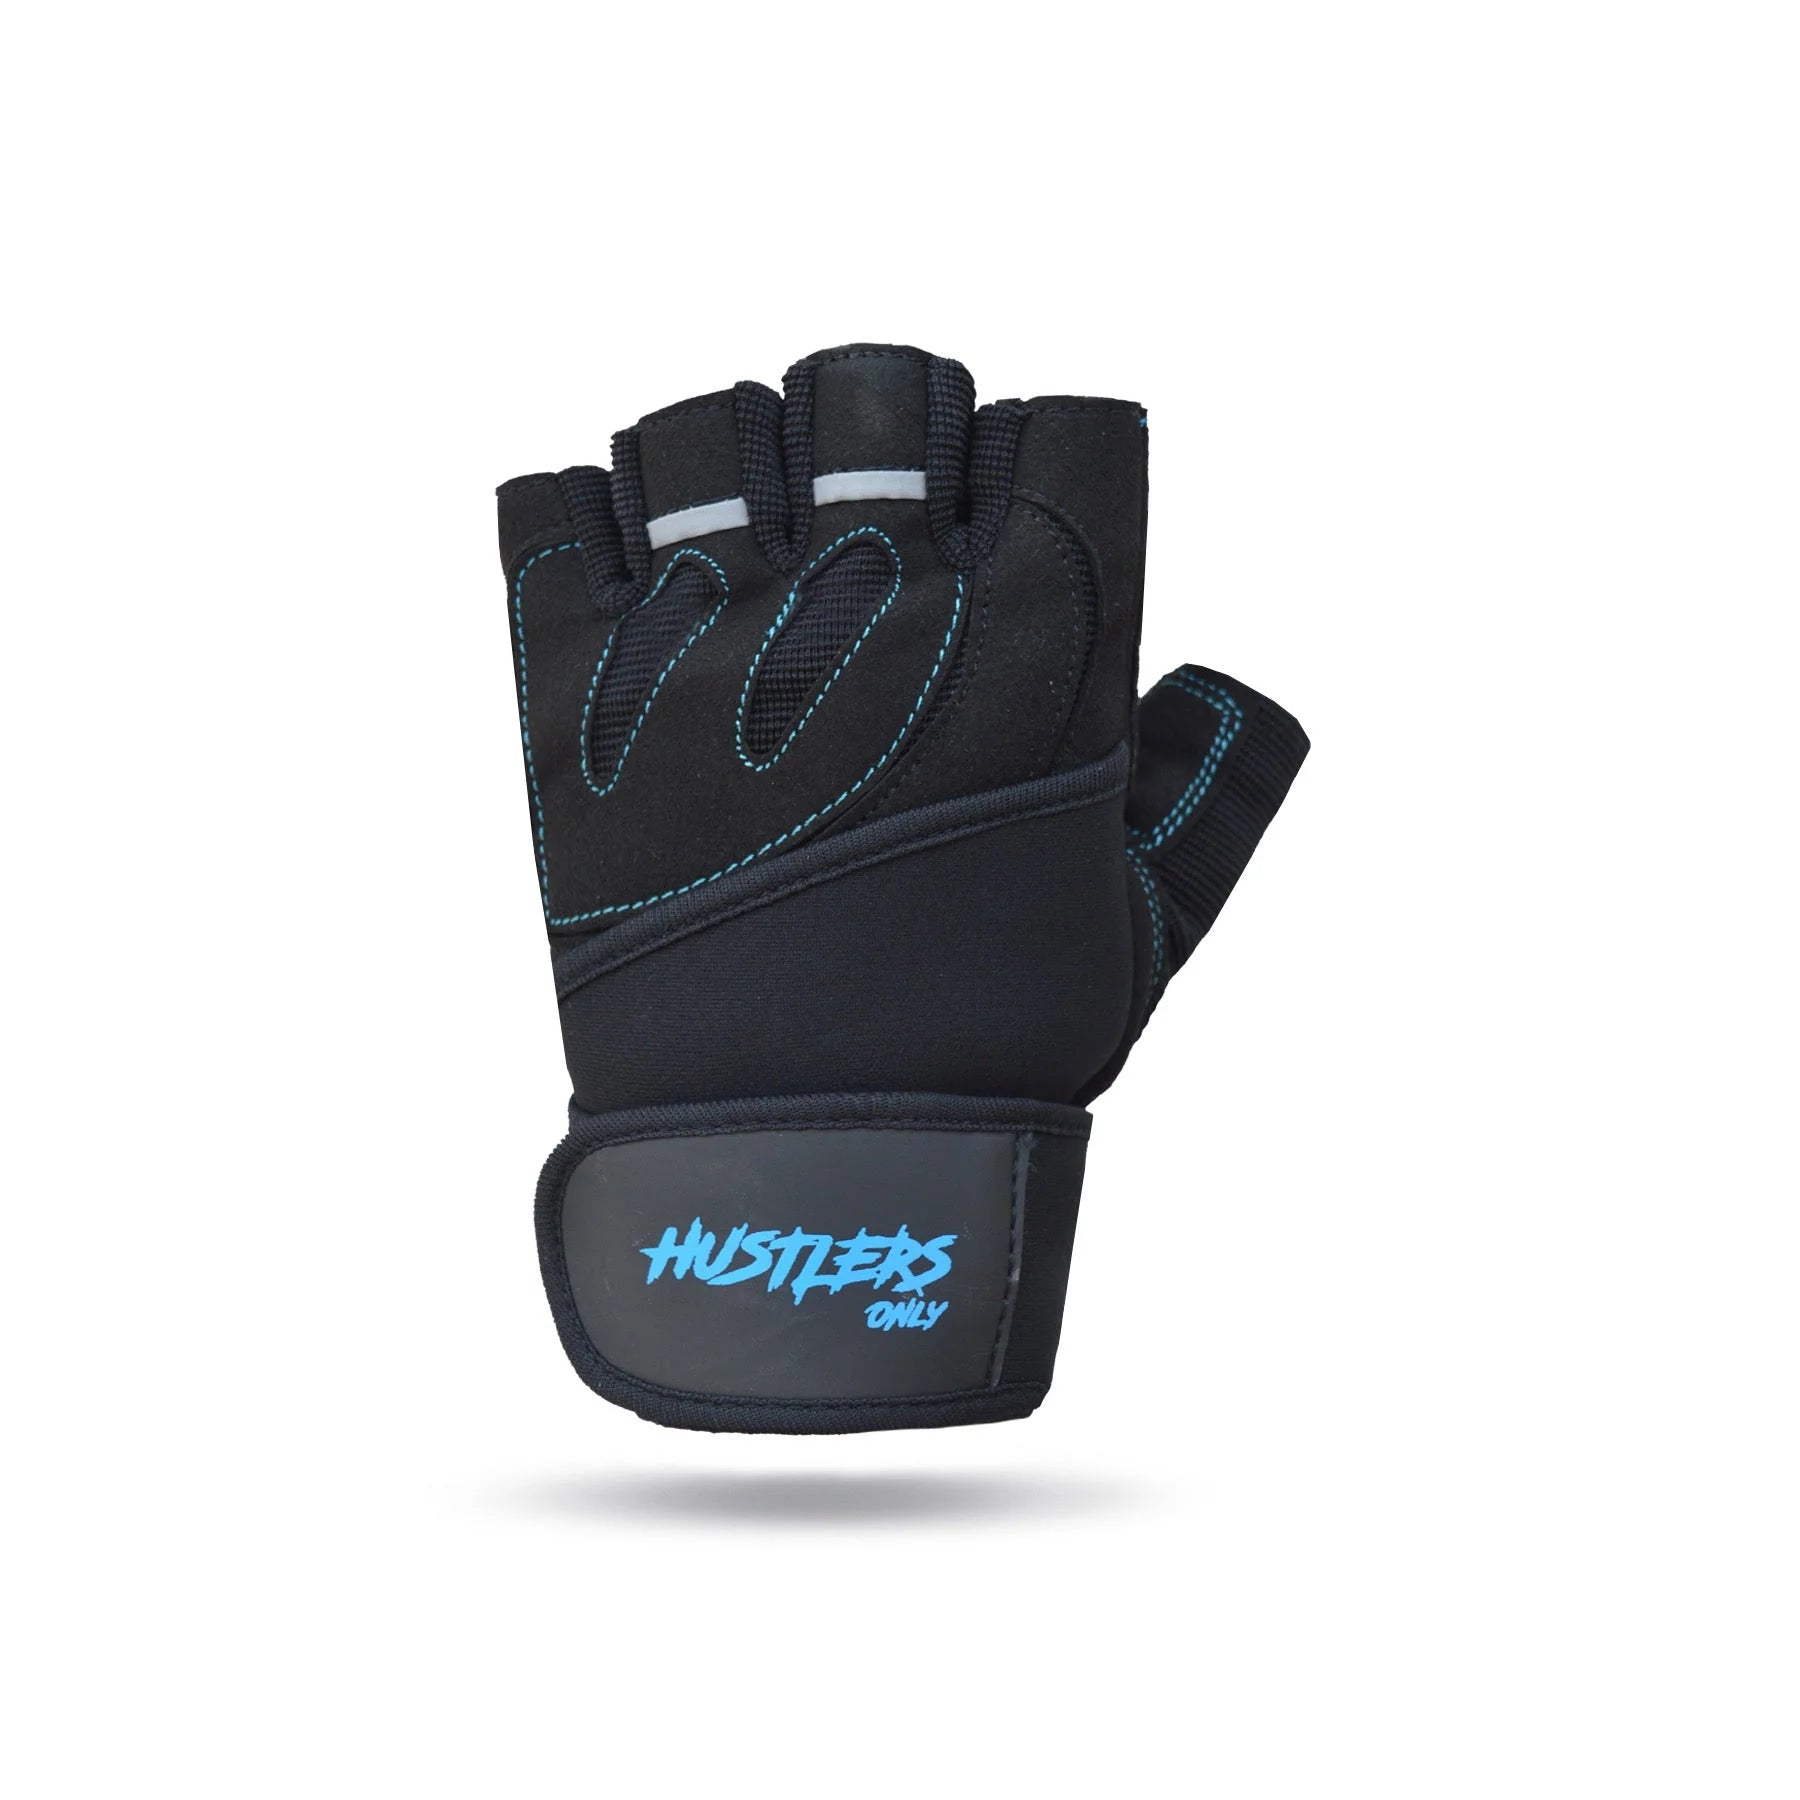 Pro Wrist Wraps Gloves